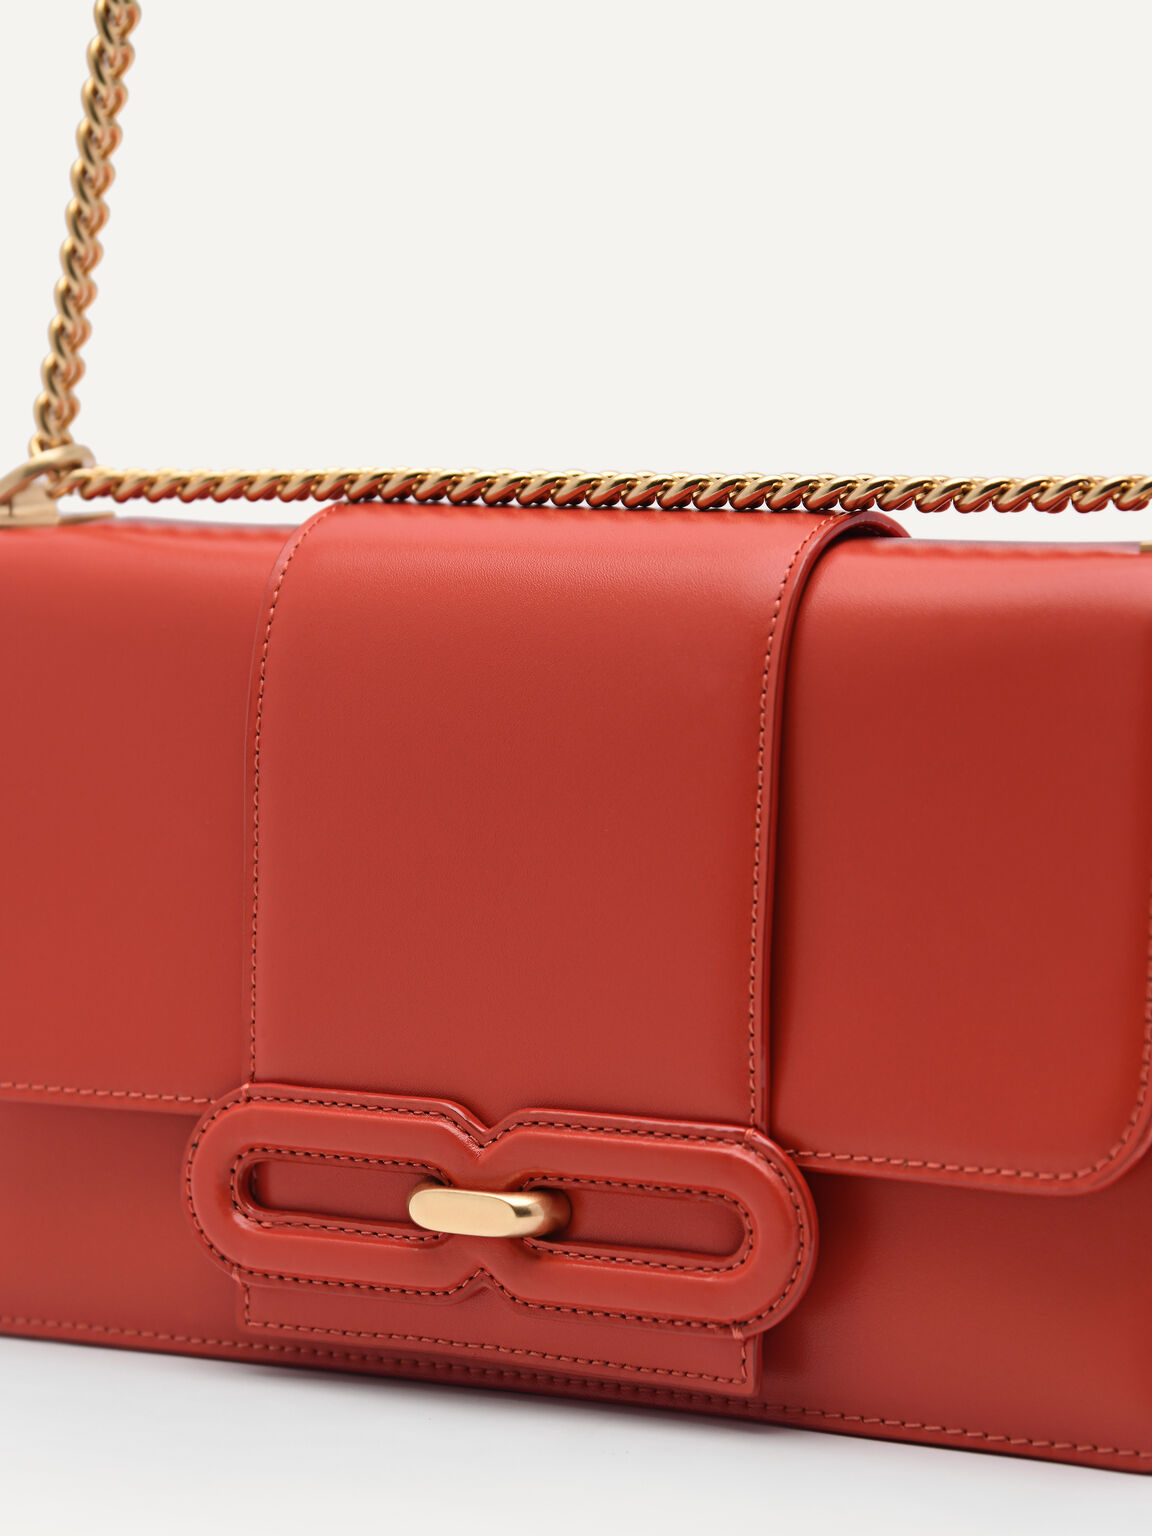 PEDRO Studio Kate Leather Shoulder Bag, Red